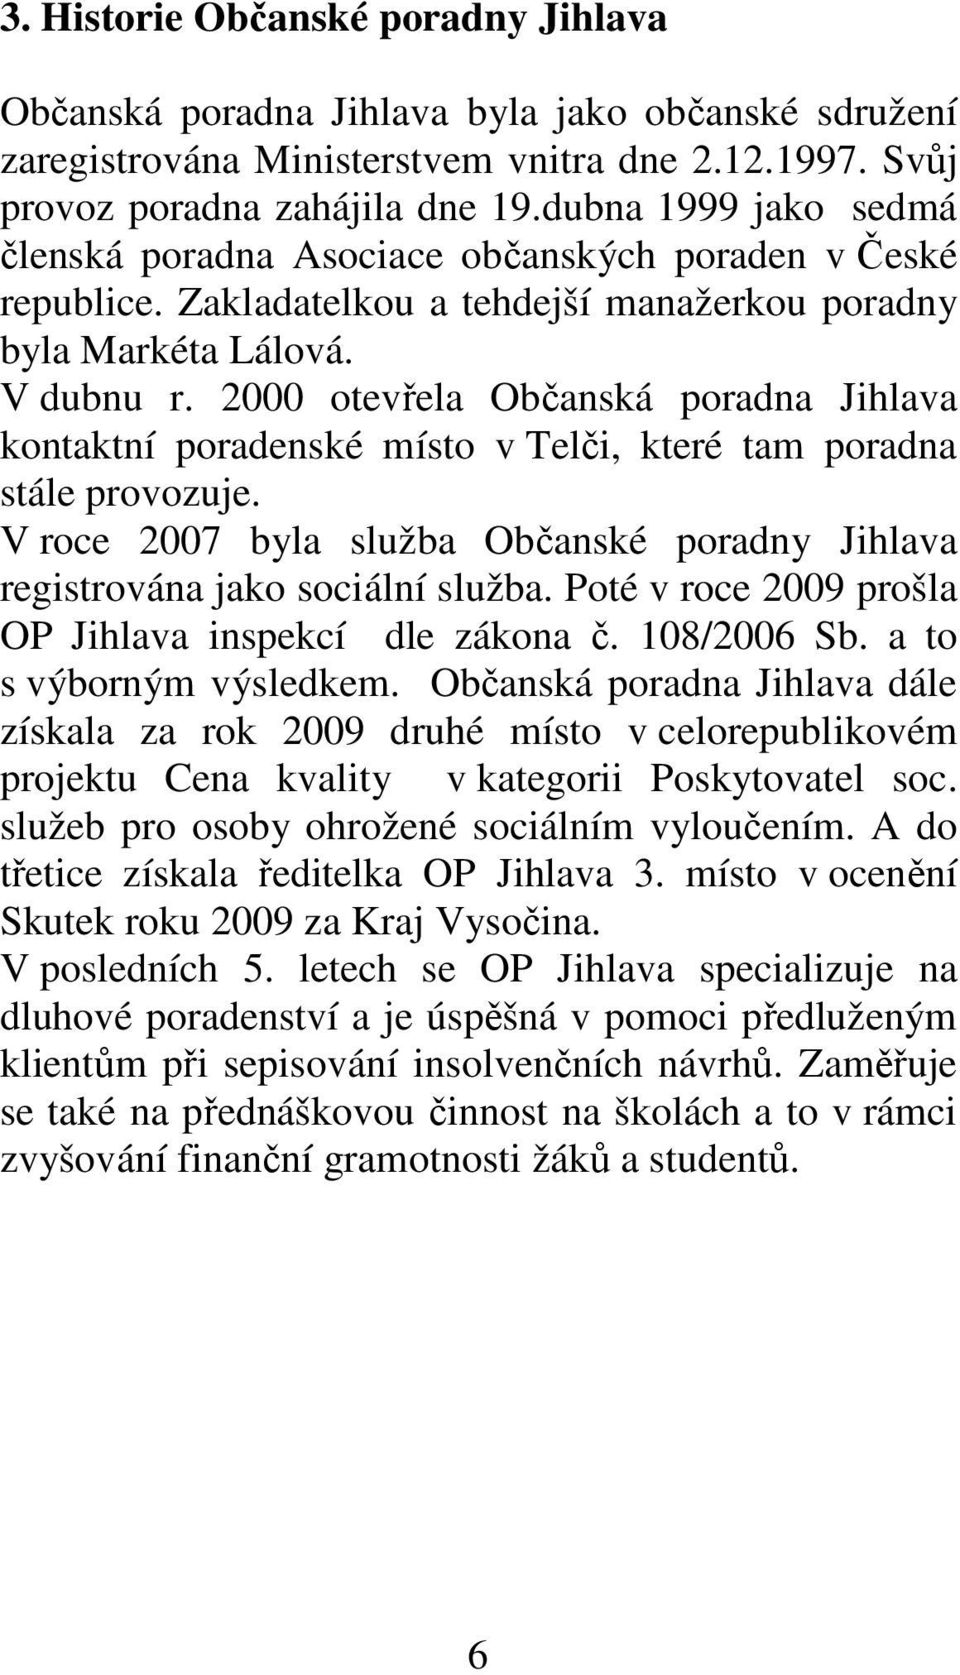 2000 otevřela Občanská poradna Jihlava kontaktní poradenské místo v Telči, které tam poradna stále provozuje. V roce 2007 byla služba Občanské poradny Jihlava registrována jako sociální služba.